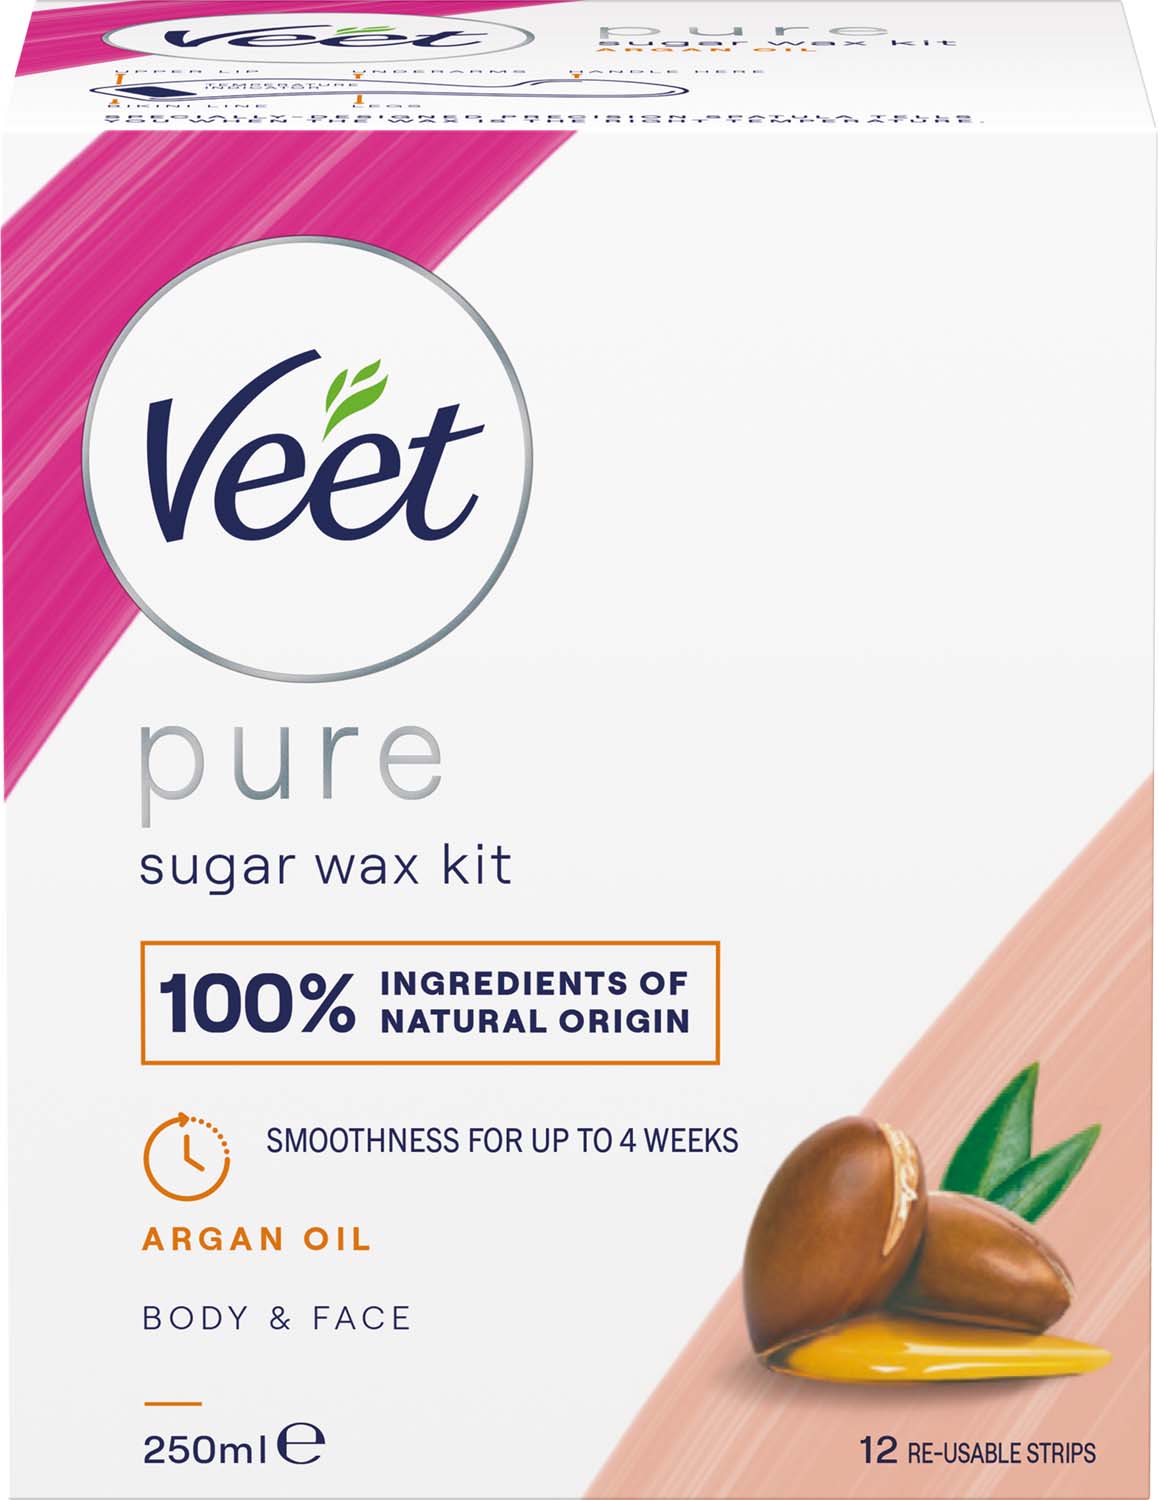 Veet ml Oil Argan Veet 250 with Natural Sugaring